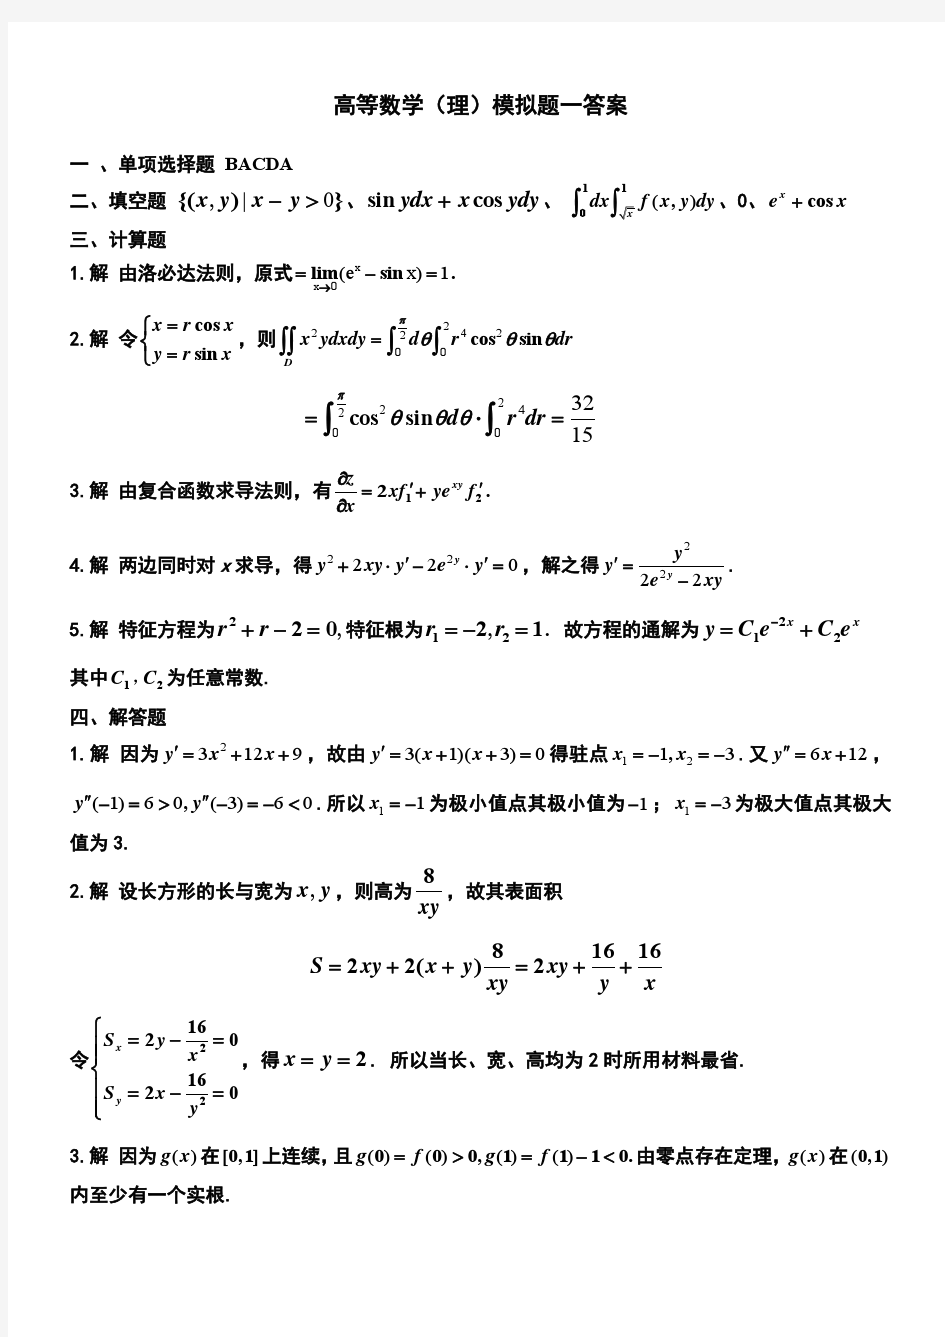 四川大学网络教育学院 高等数学(理) 模拟题1参考答案